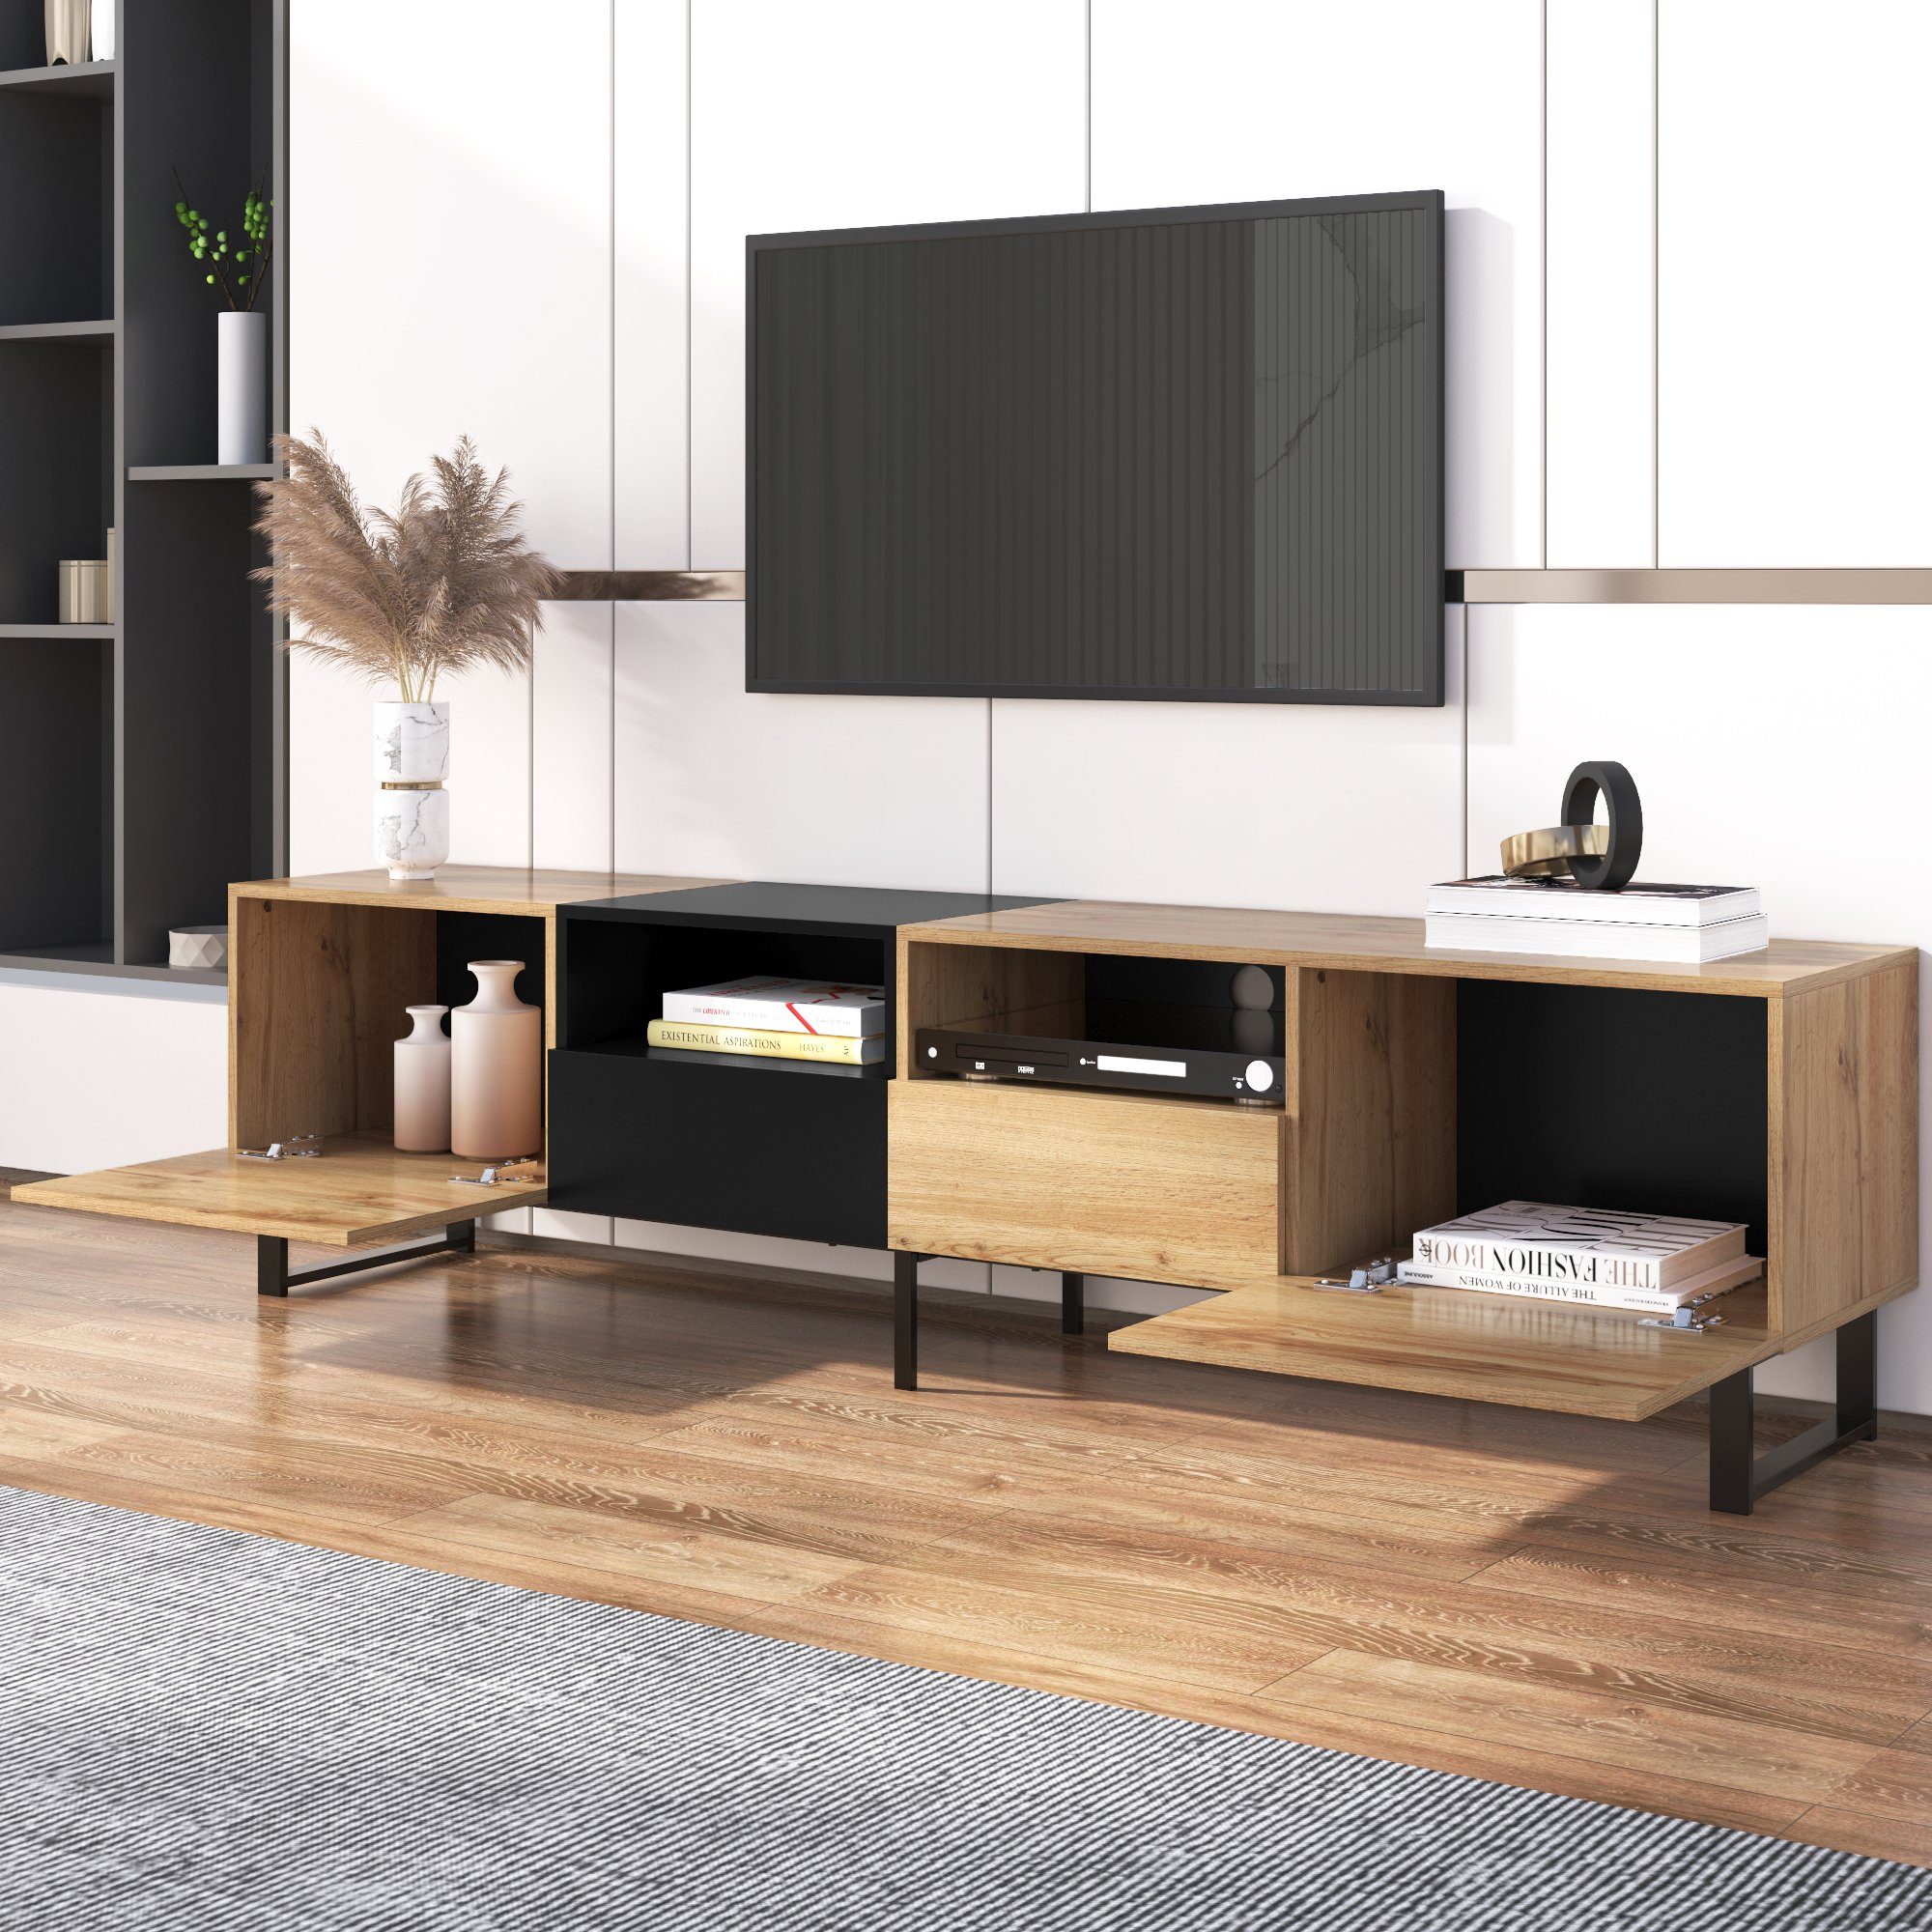 BUMHUM TV-Schrank Moderner TV-Ständer mit schwarzem und holzfarbenem Design  – geräumiger Stauraum, robuste Konstruktion